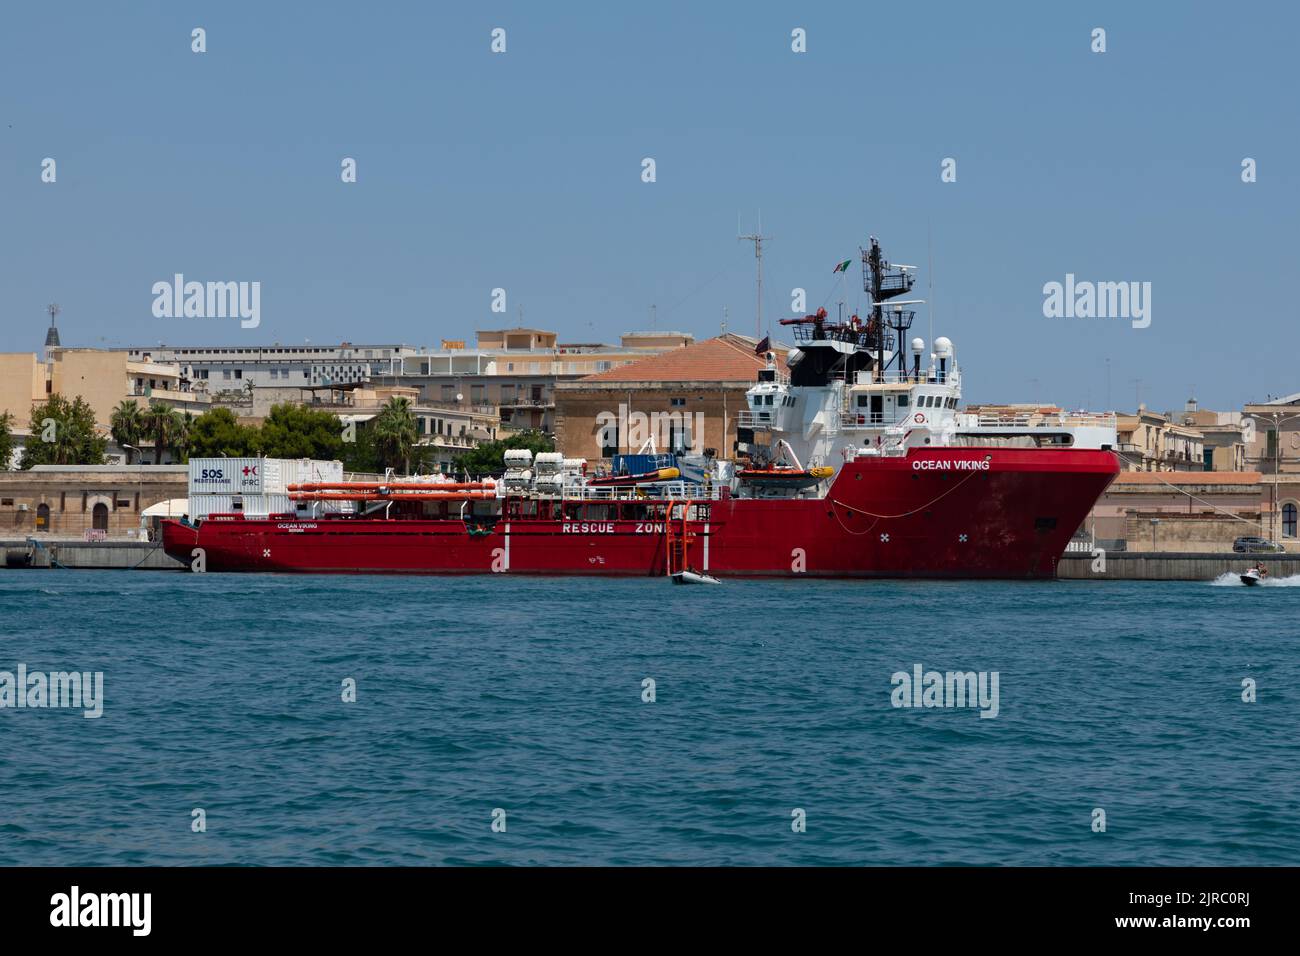 L'Ocean Viking, noleggiato da SOS Mediterranee per condurre attività di ricerca e salvataggio nel Mediterraneo centrale. Foto Stock